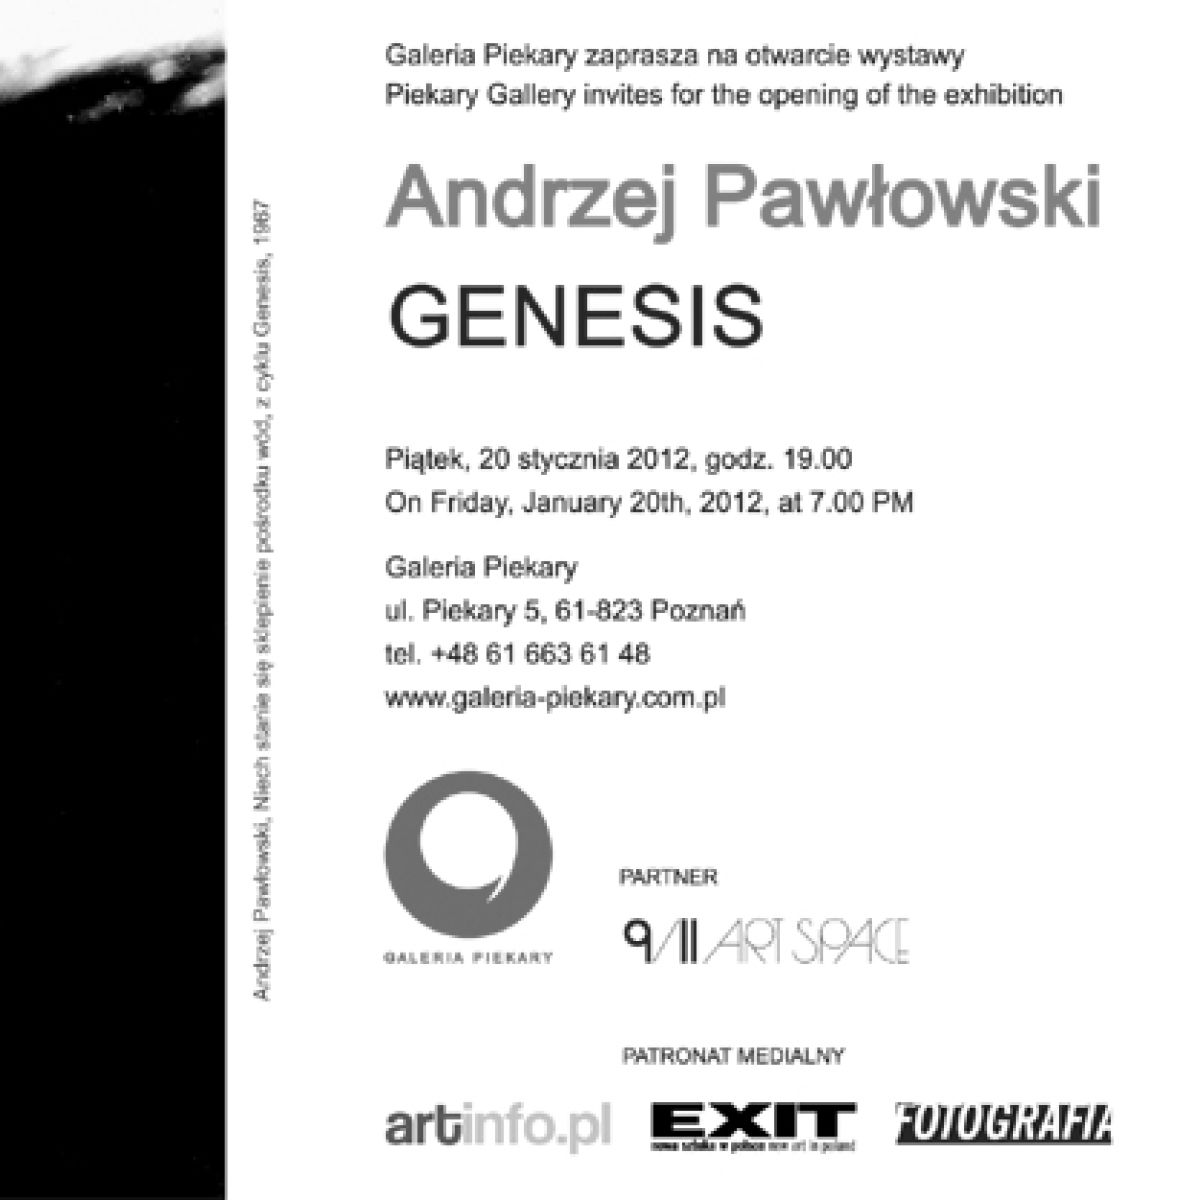 Andrzej Pawłowski, Genesis